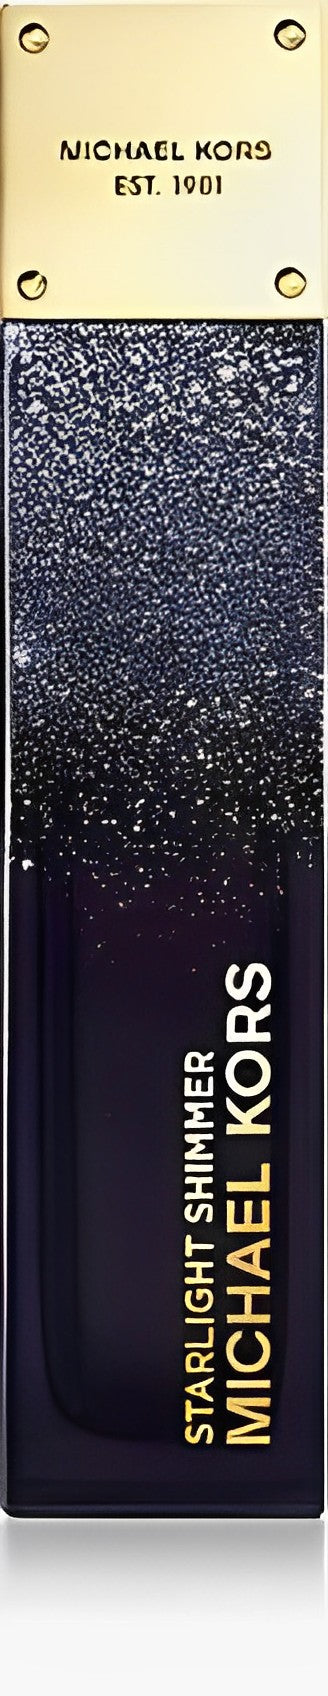 Michael Kors - Starlight Shimmer edp 100ml tester / LADY